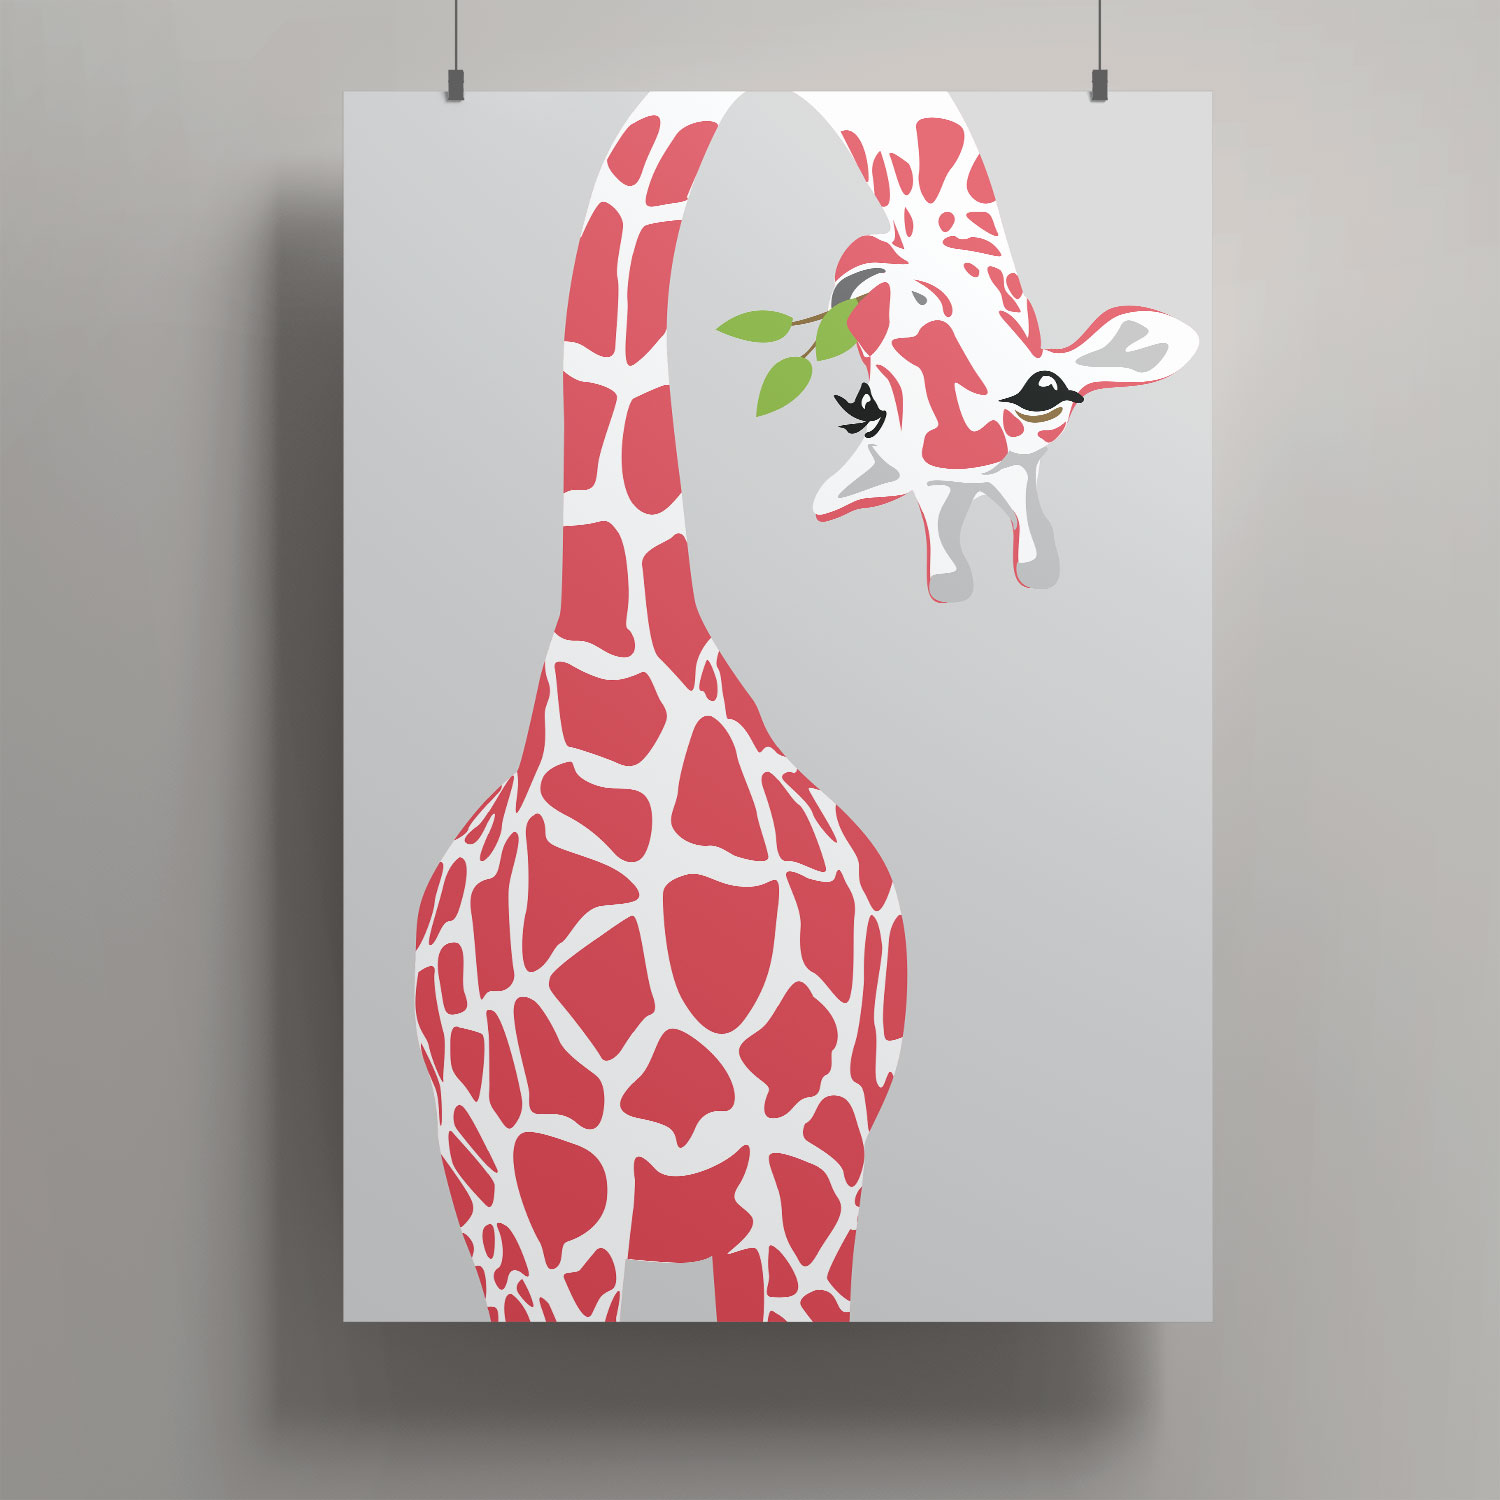 Artprint A3 - Giraffe